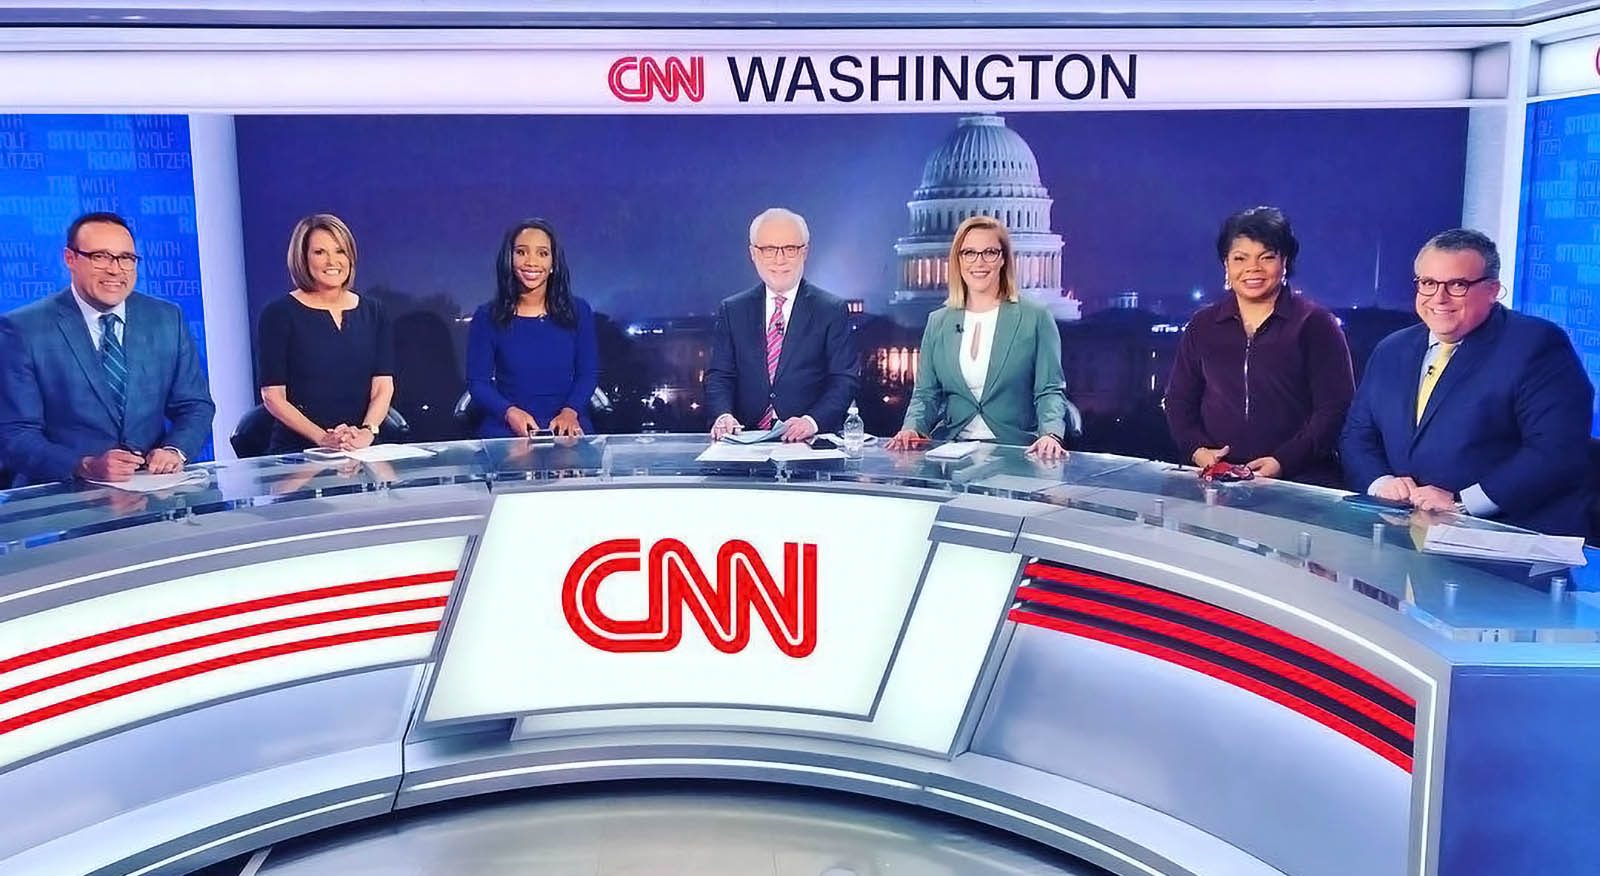 CNN Washington newscasters